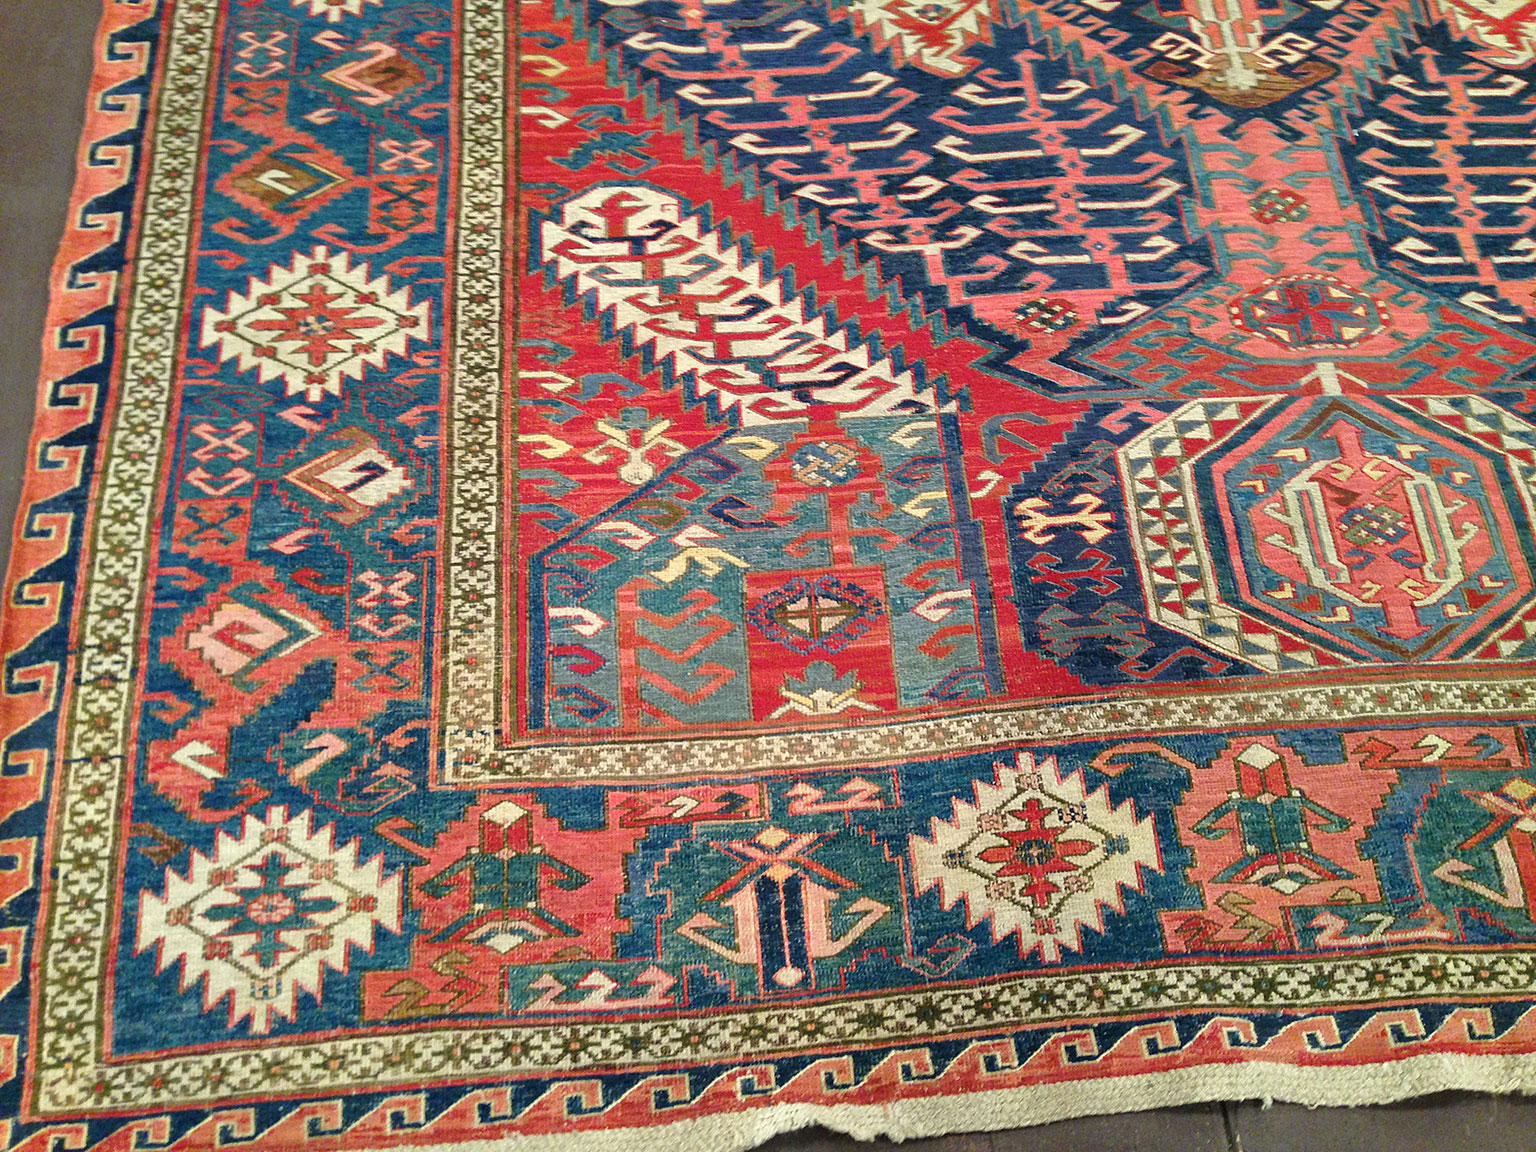 Antique soumac Carpet - # 50892